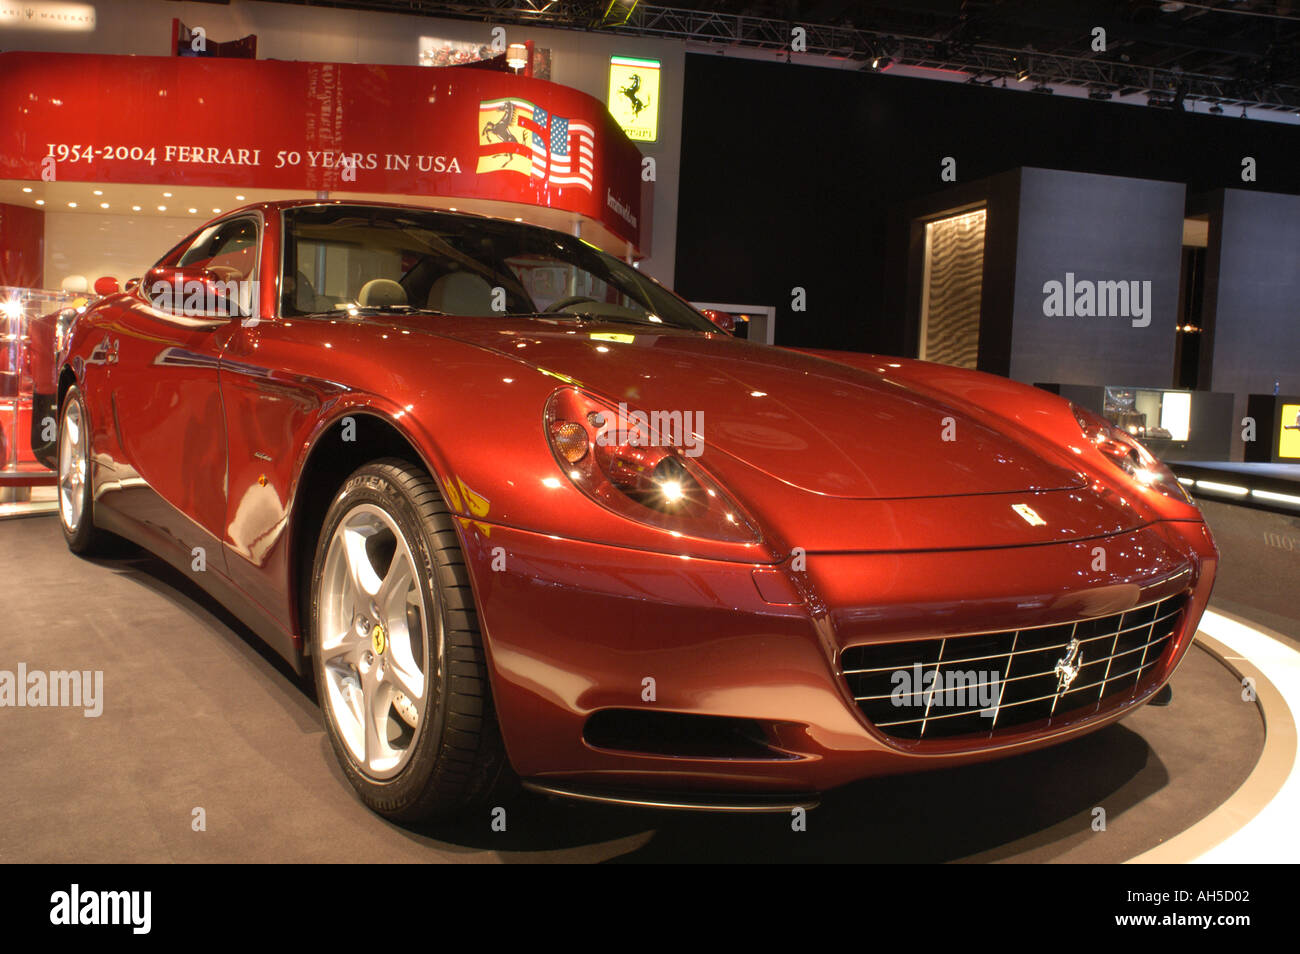 2004 Ferrari 612 Scaglietti introduced at the 2004 North American International Auto Show Stock Photo